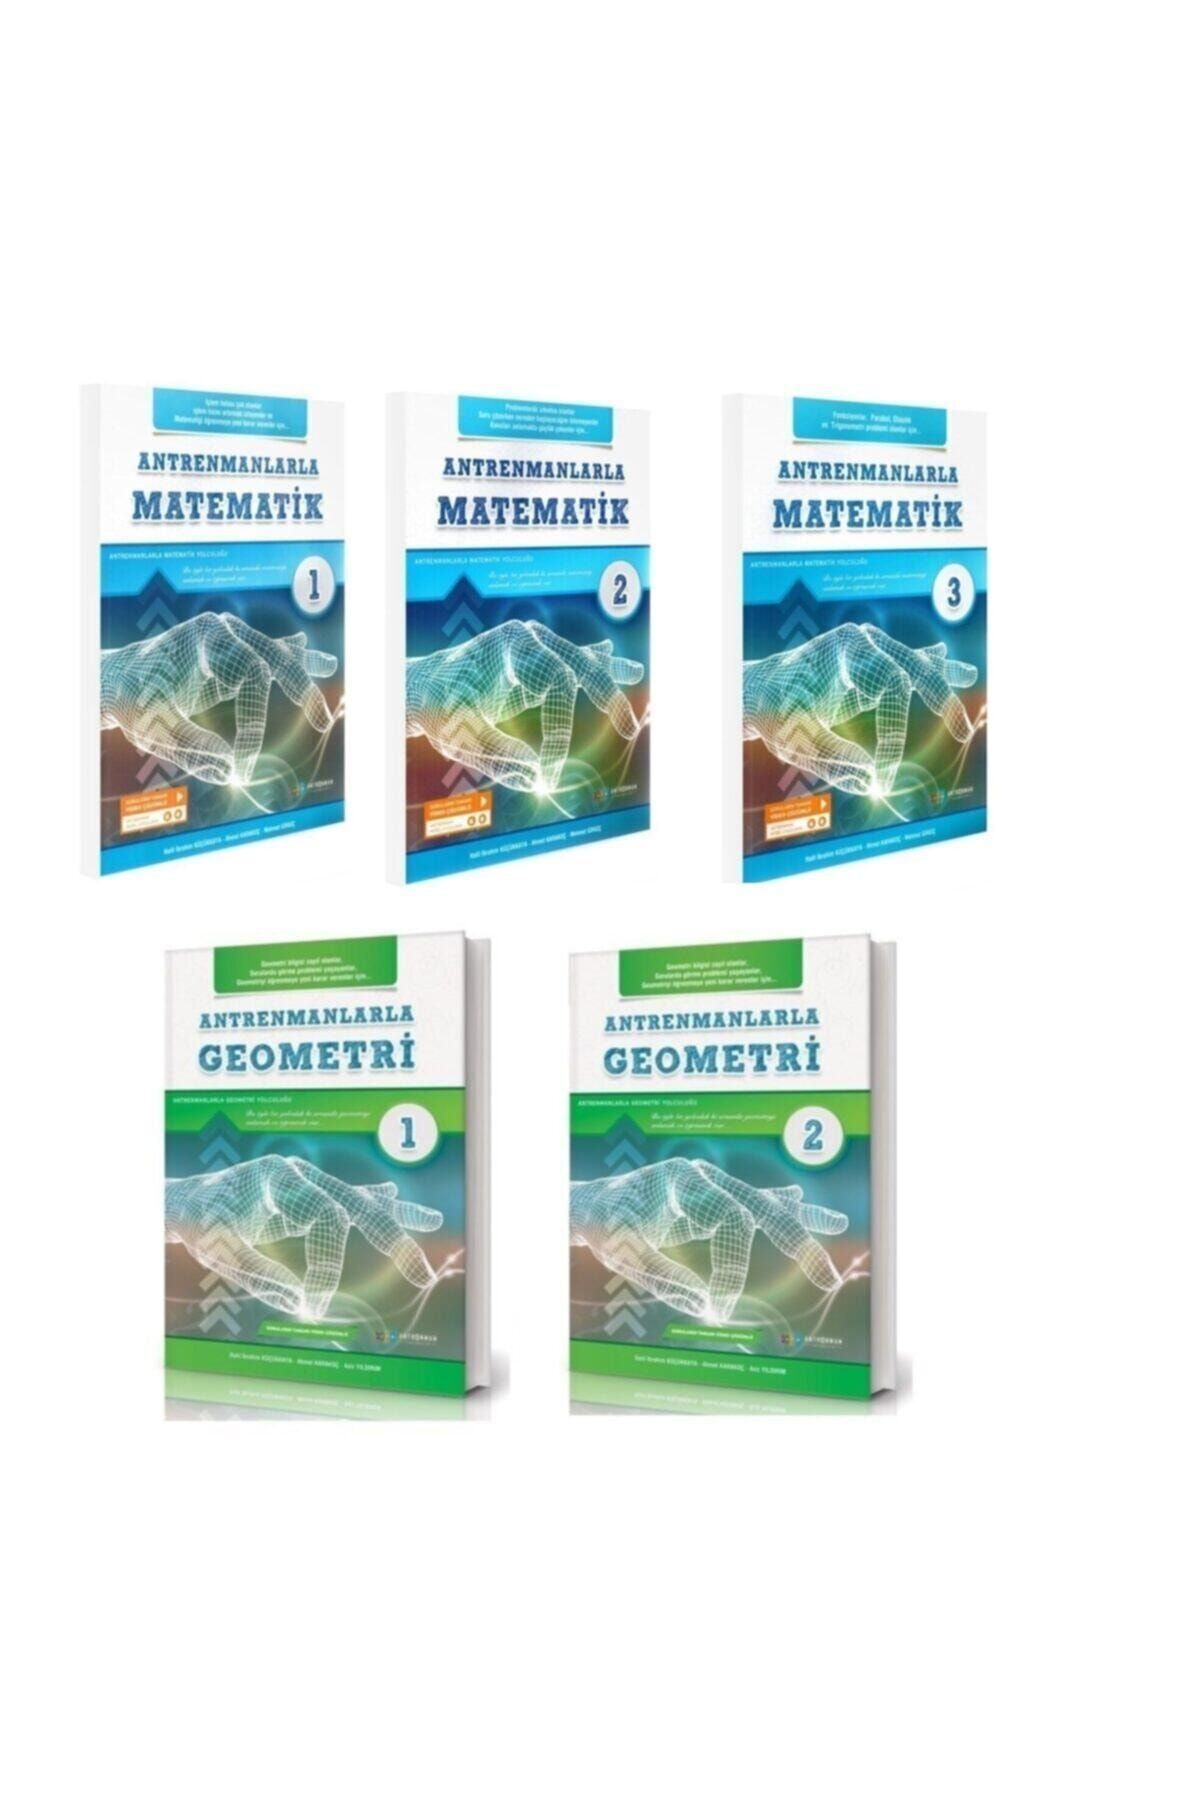 Antrenman Yayınları Antrenmanlarla Matematik 1-2-3 Antrenmanlarla Geometri 1-2 Set Ant123geo12